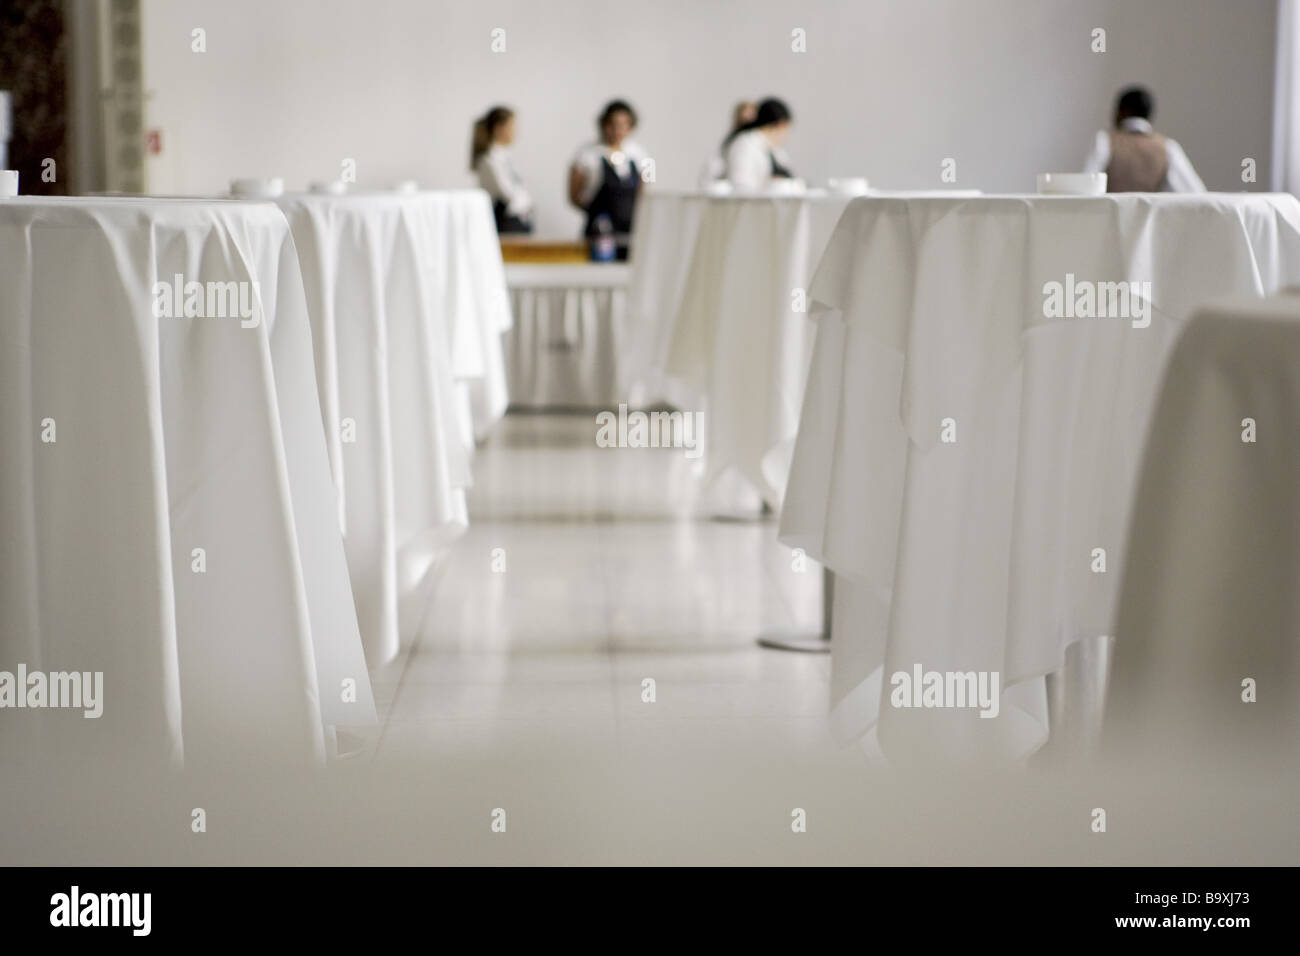 Empfangsraum, Tische, Tischdecken, weiß, Cateringservice, Angestellte, Unschärfe Stock Photo